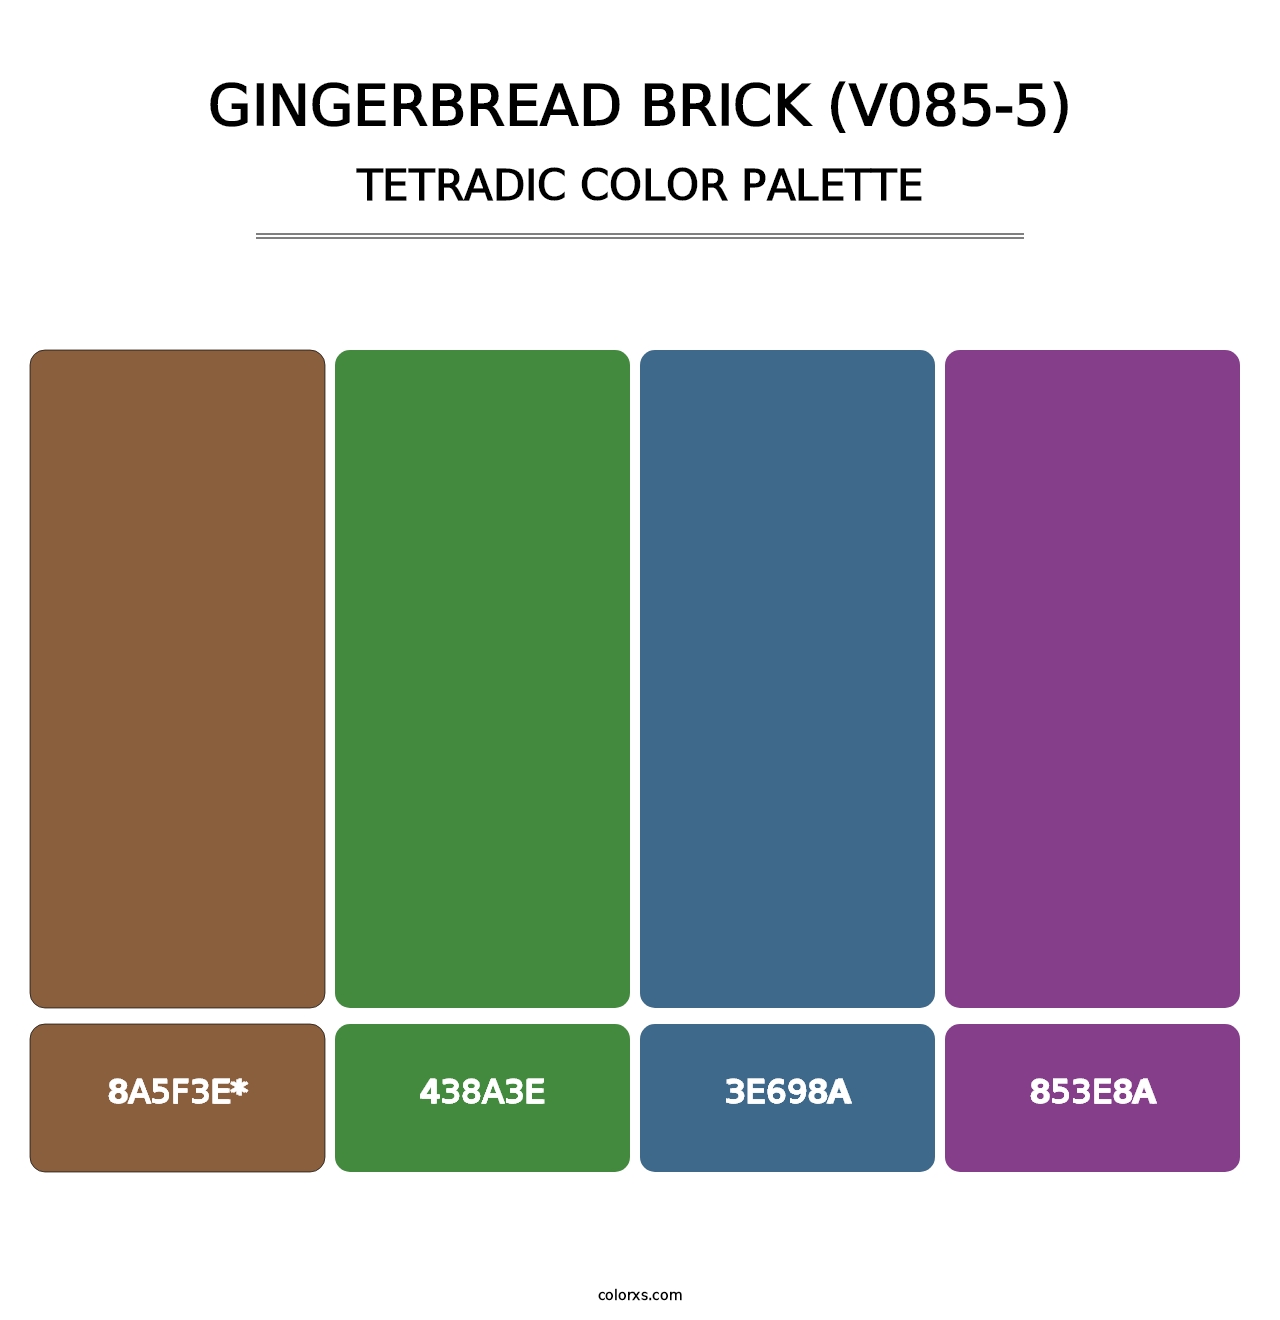 Gingerbread Brick (V085-5) - Tetradic Color Palette